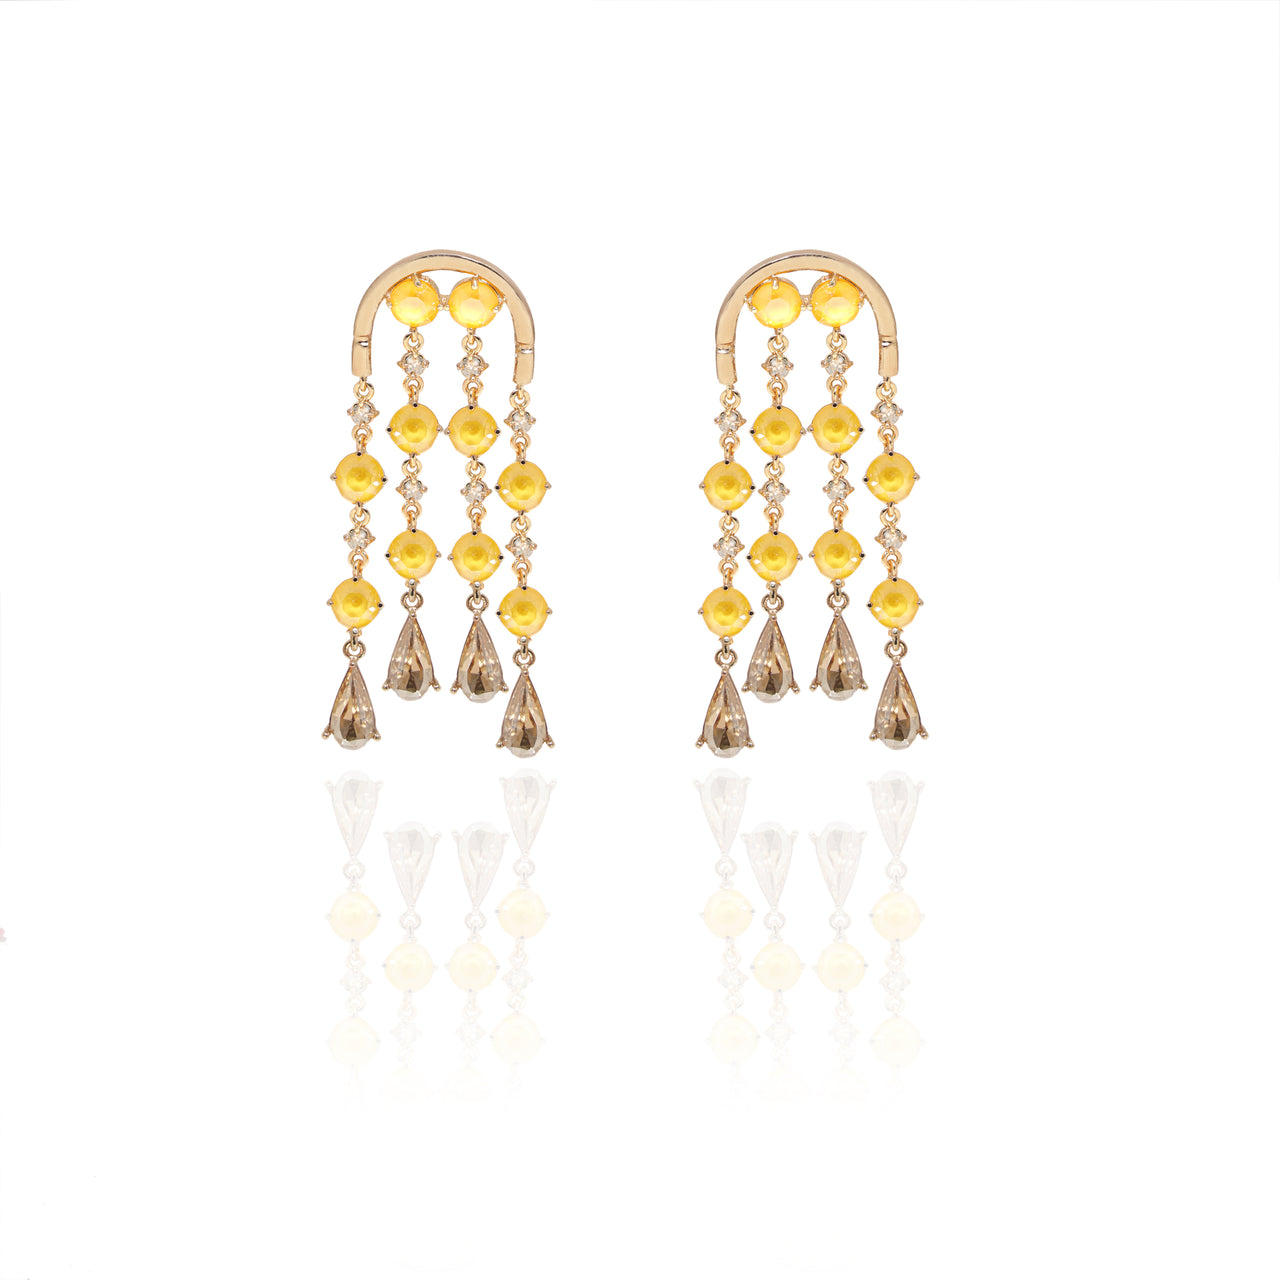 Yellow Chandelier earrings for social wear